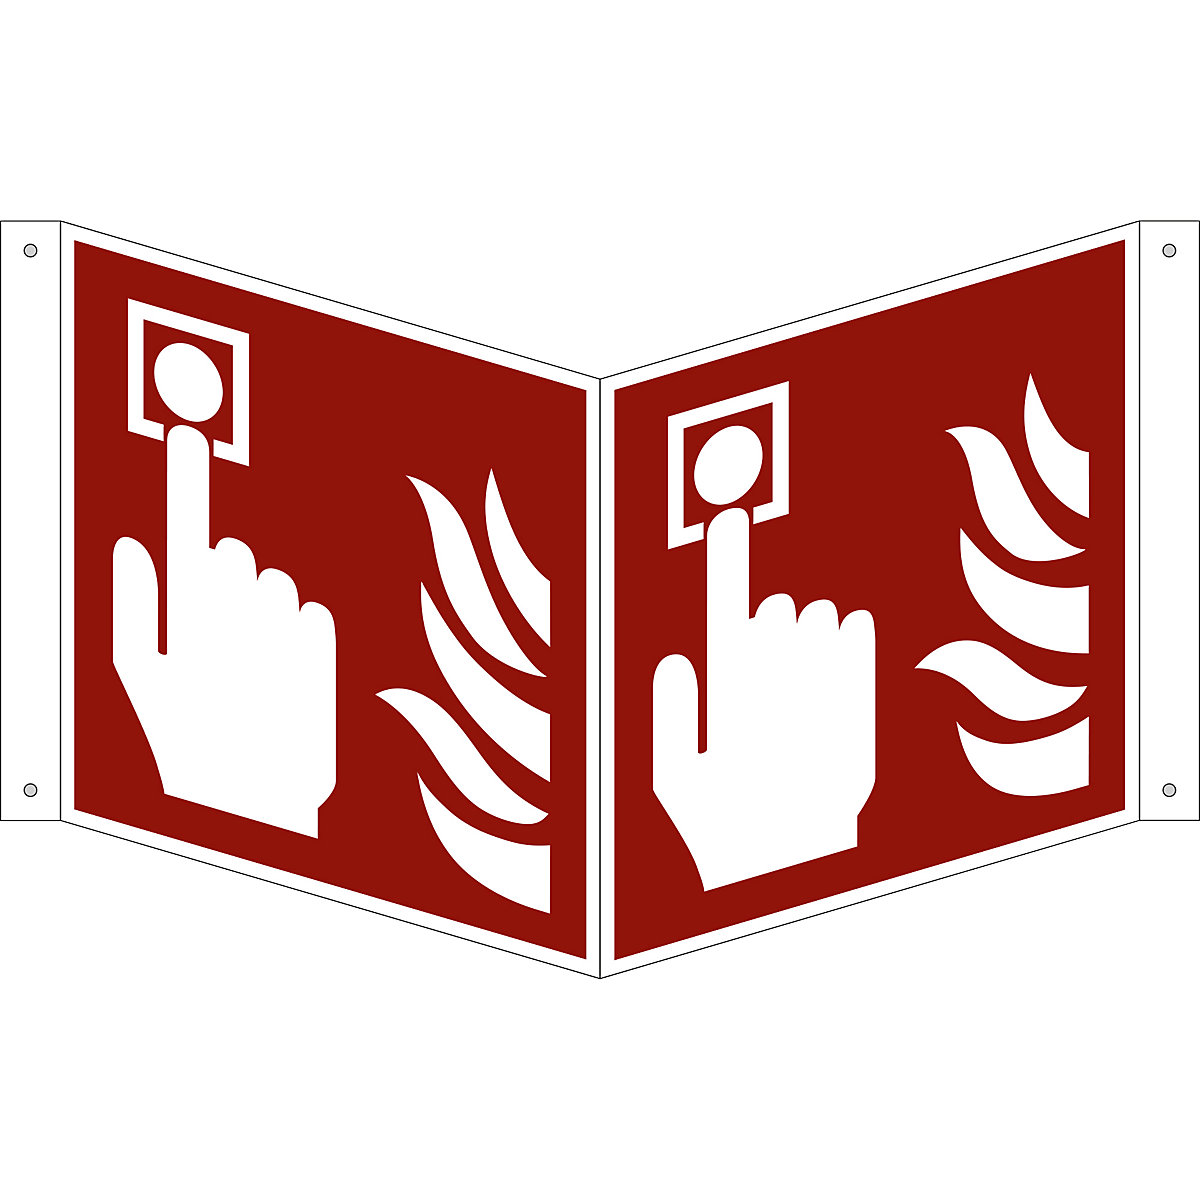 Značka pro ochranu proti požáru, požární hlásič, bal.j. 10 ks, hliník, vysunutý štítek, 200 x 200 mm